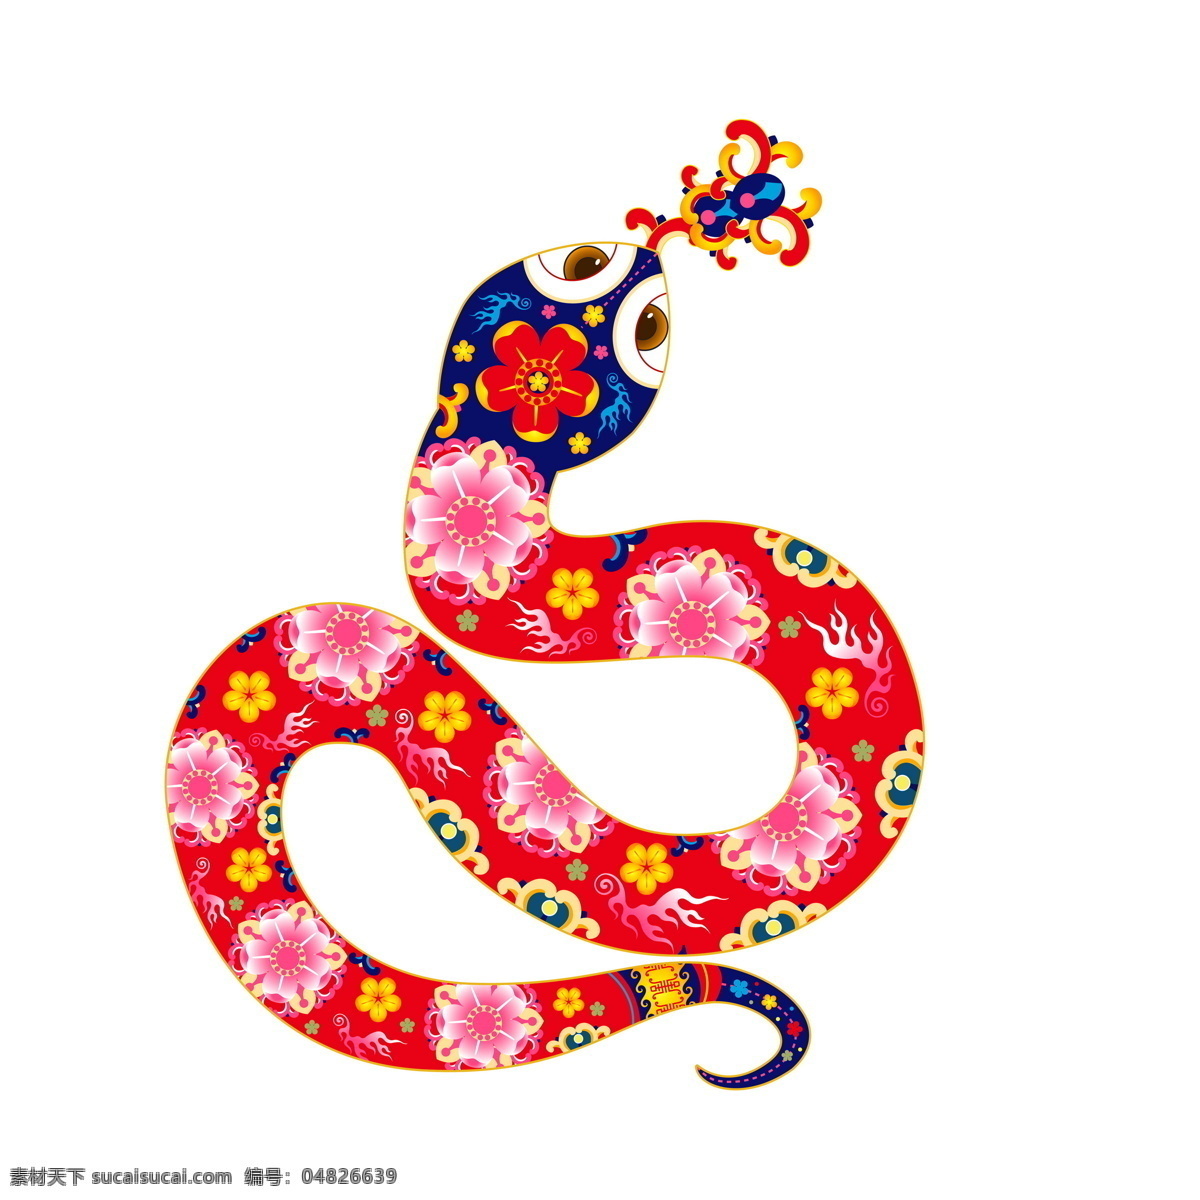 红色 蛇 设计素材 卡通蛇 蛇年 蛇年素材 2013 新年素材 广告海报素材 宣传促销 节日庆典 生活百科